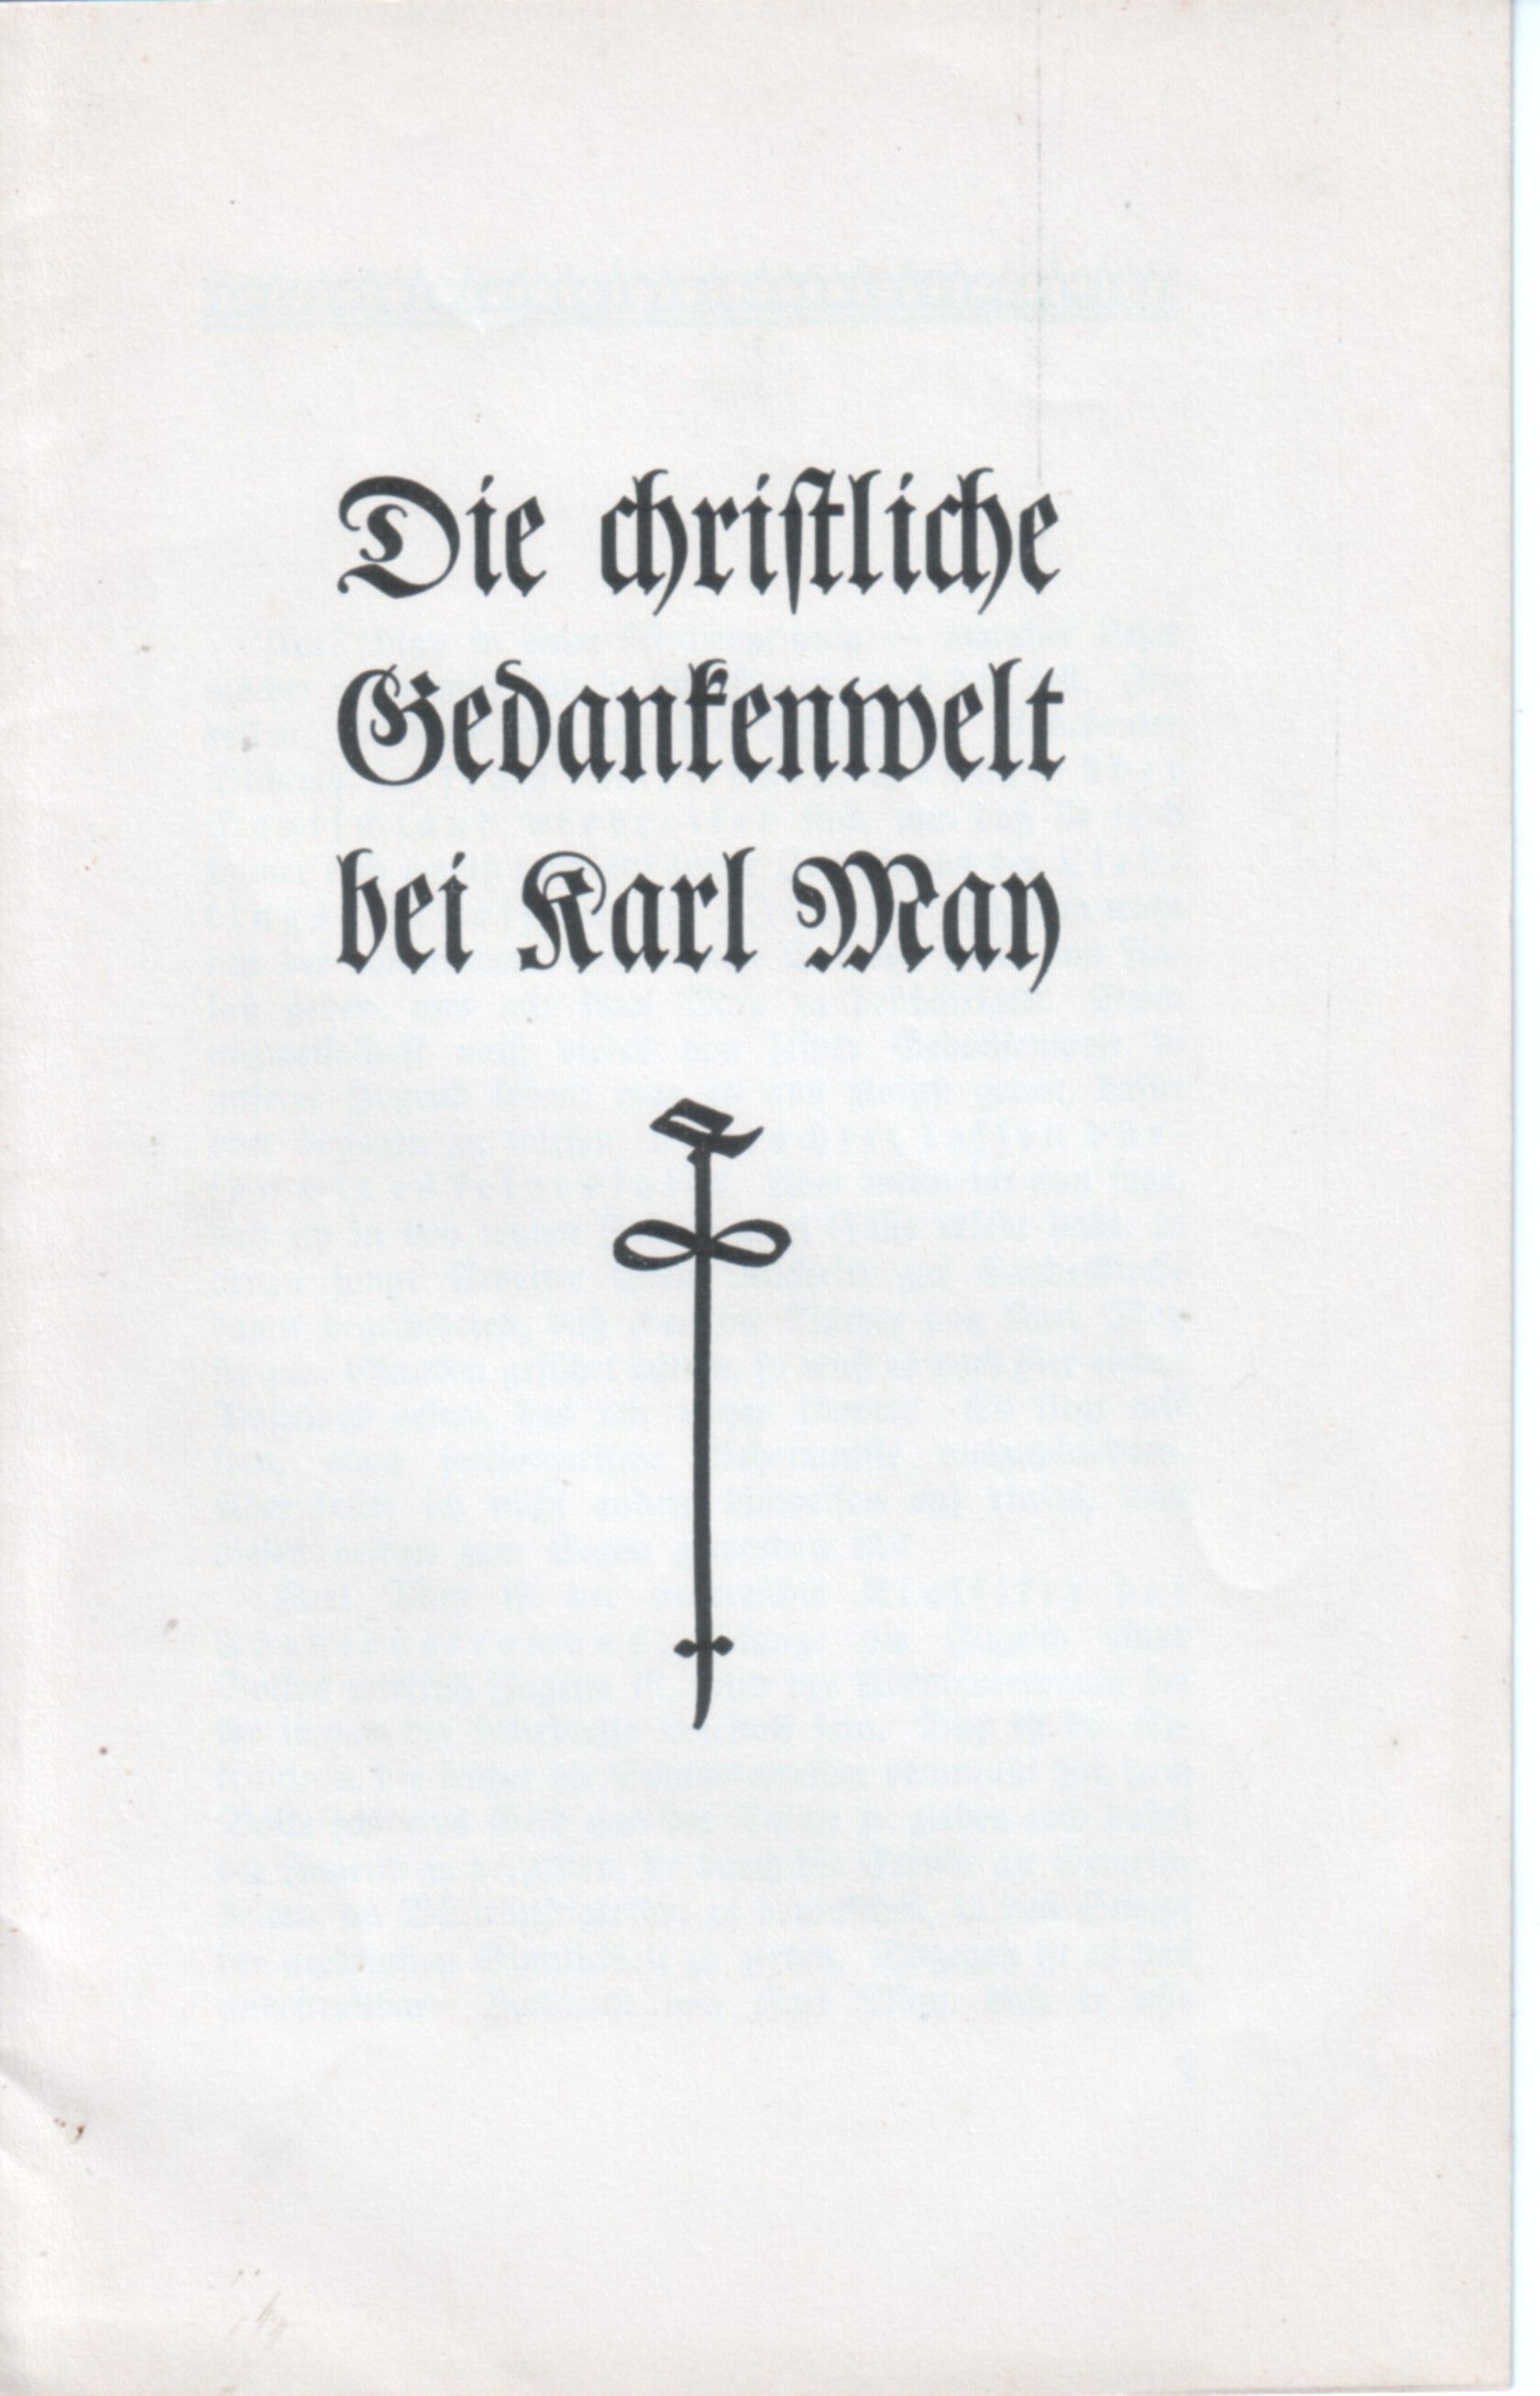 Rietzsch Christliche Gedankenwelt Sonderdruck 1935.jpg